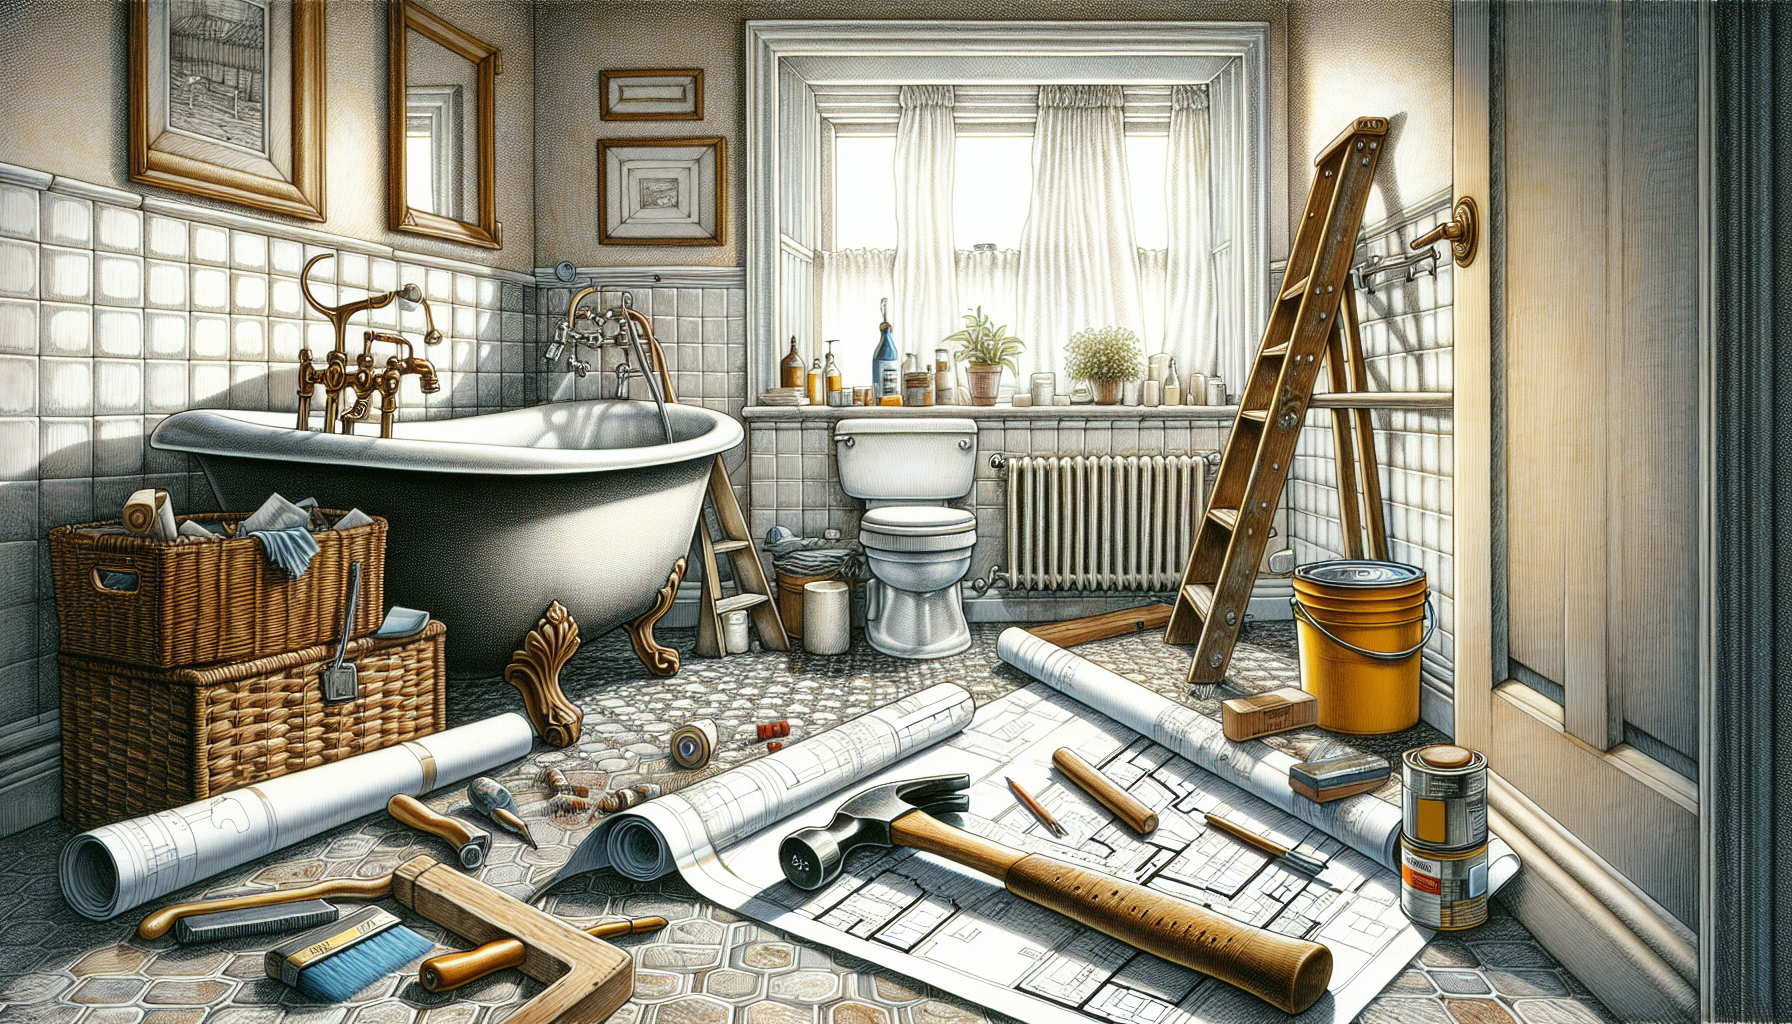 Illustration eines Badezimmers mit Renovierungsutensilien